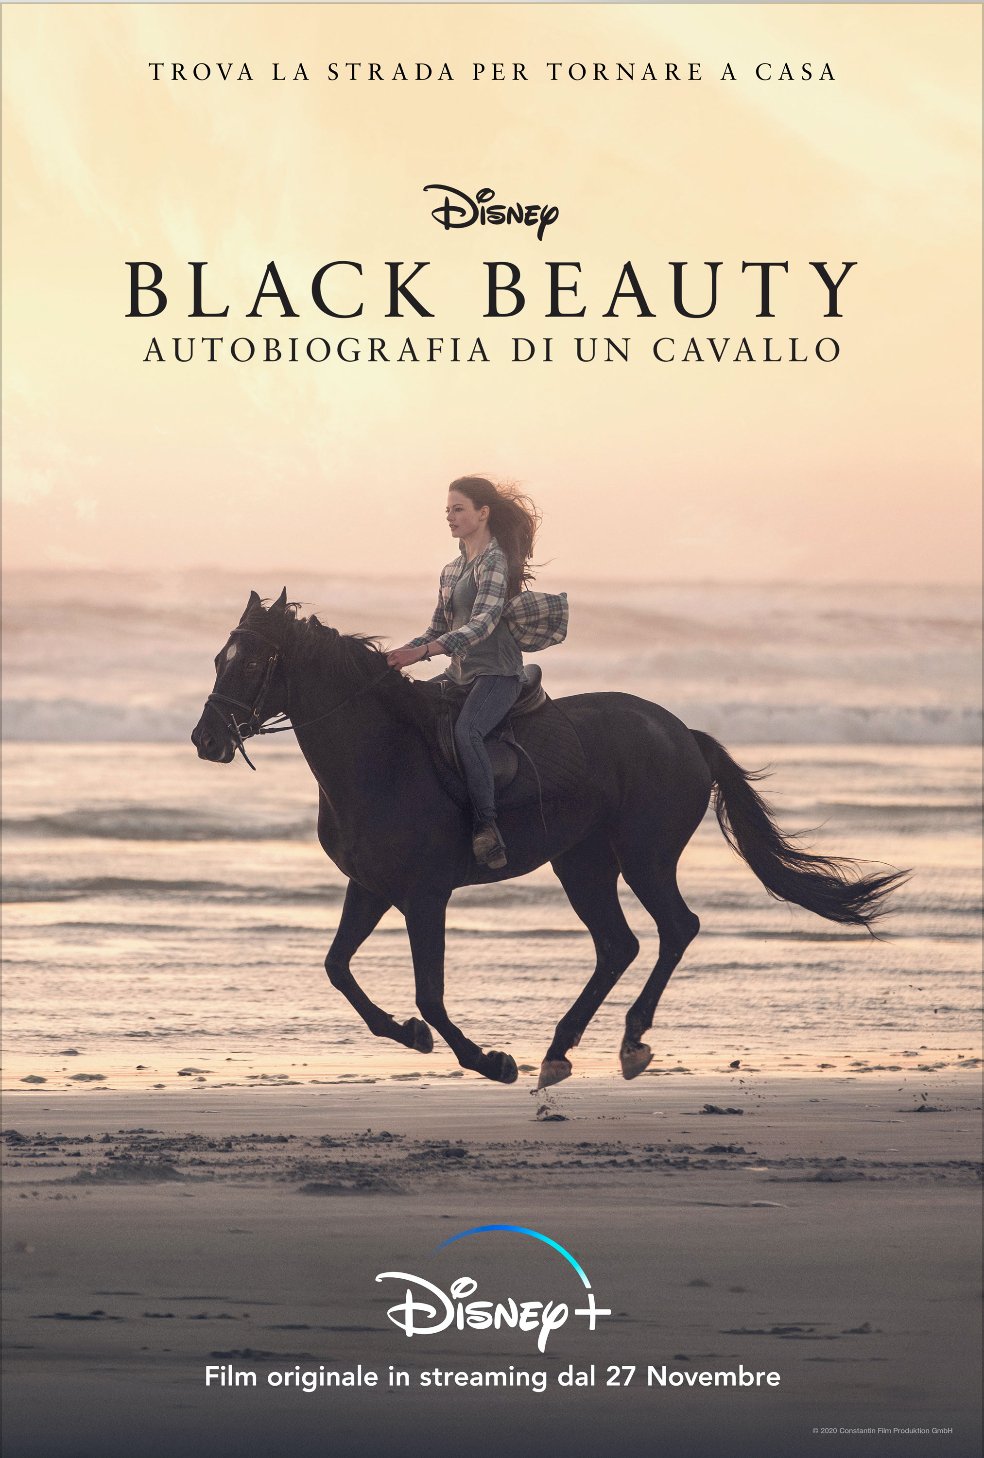 Black Beauty: Autobiografia di un cavallo arriva su Disney+